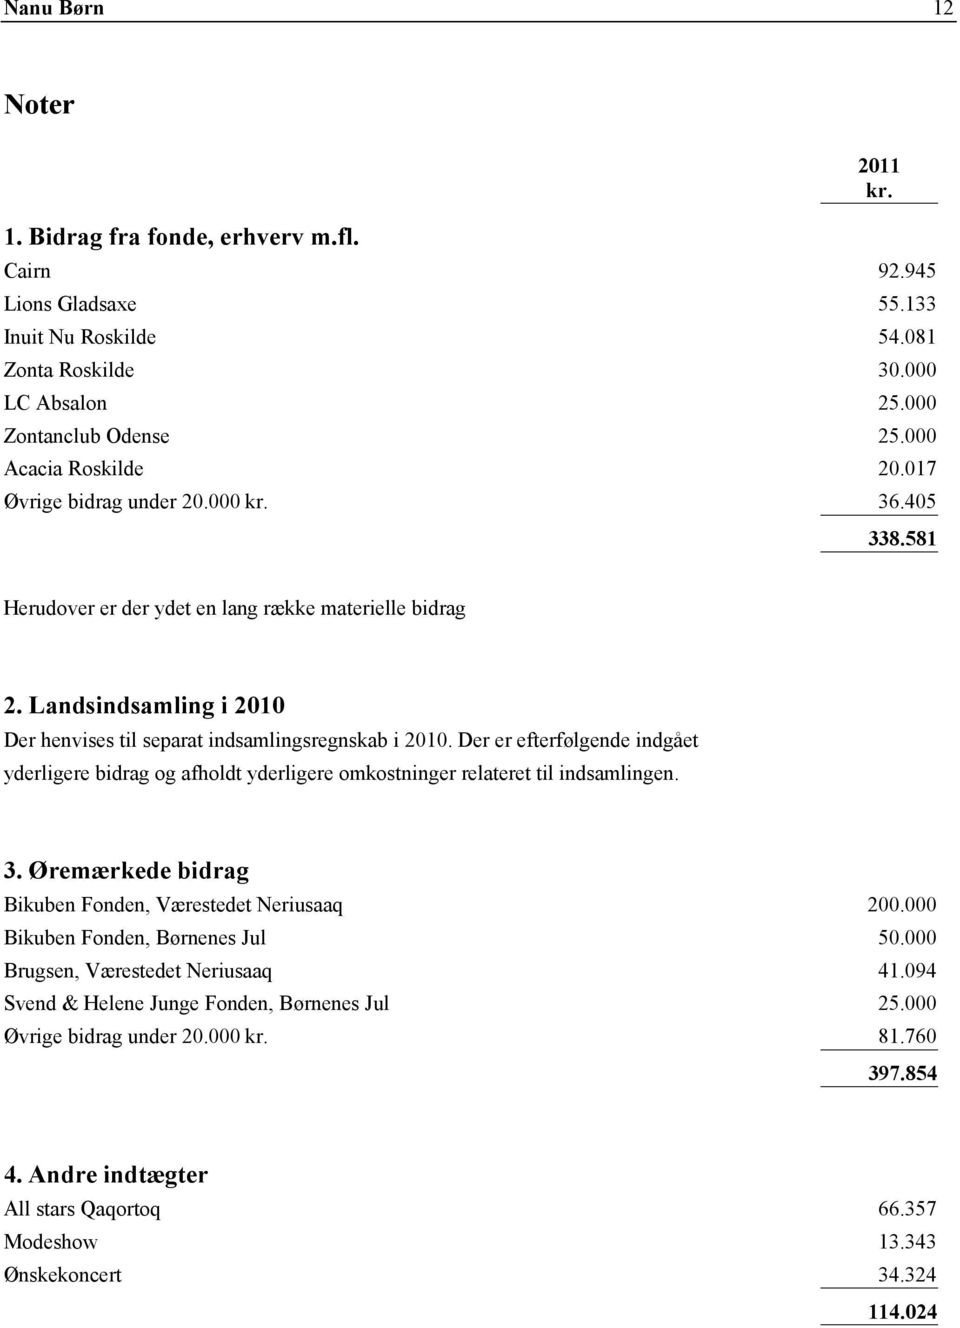 Der er efterfølgende indgået yderligere bidrag og afholdt yderligere omkostninger relateret til indsamlingen. 3. Øremærkede bidrag Bikuben Fonden, Værestedet Neriusaaq 200.